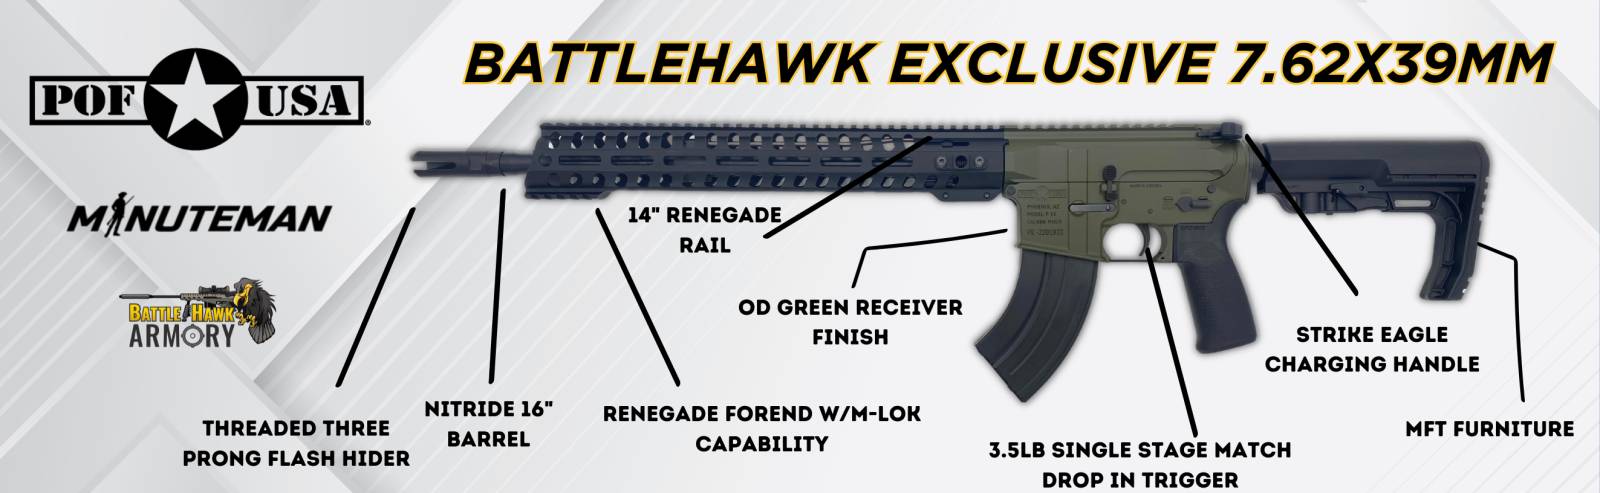 POF USA BattleHawk Minuteman Exclusive OD GREEN